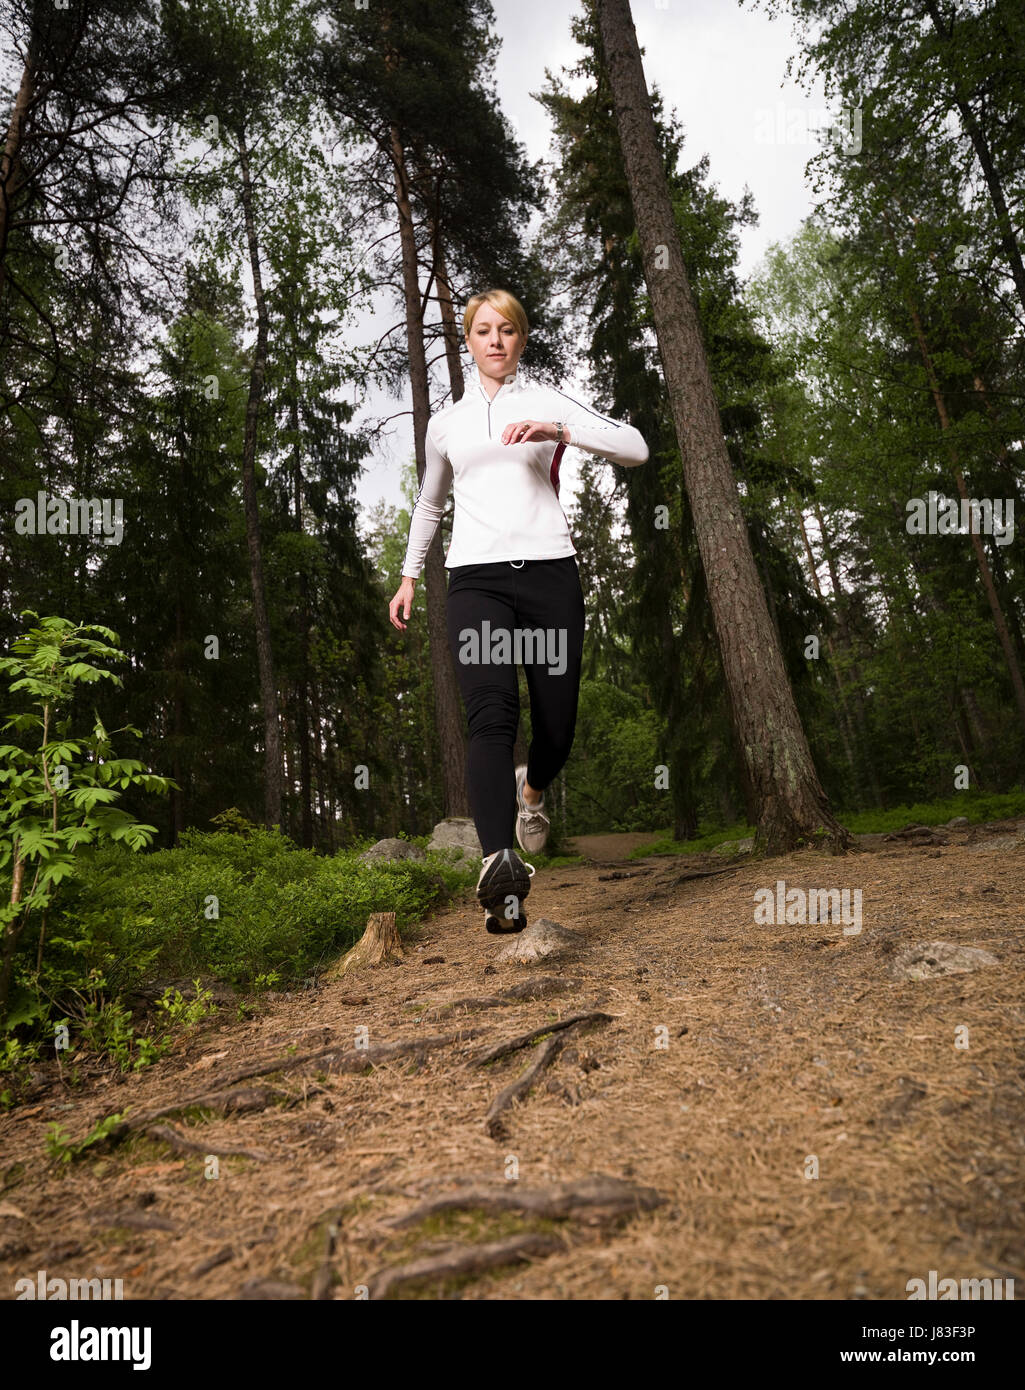 woman women sport sports wood field outdoor heat jogging athlete ...